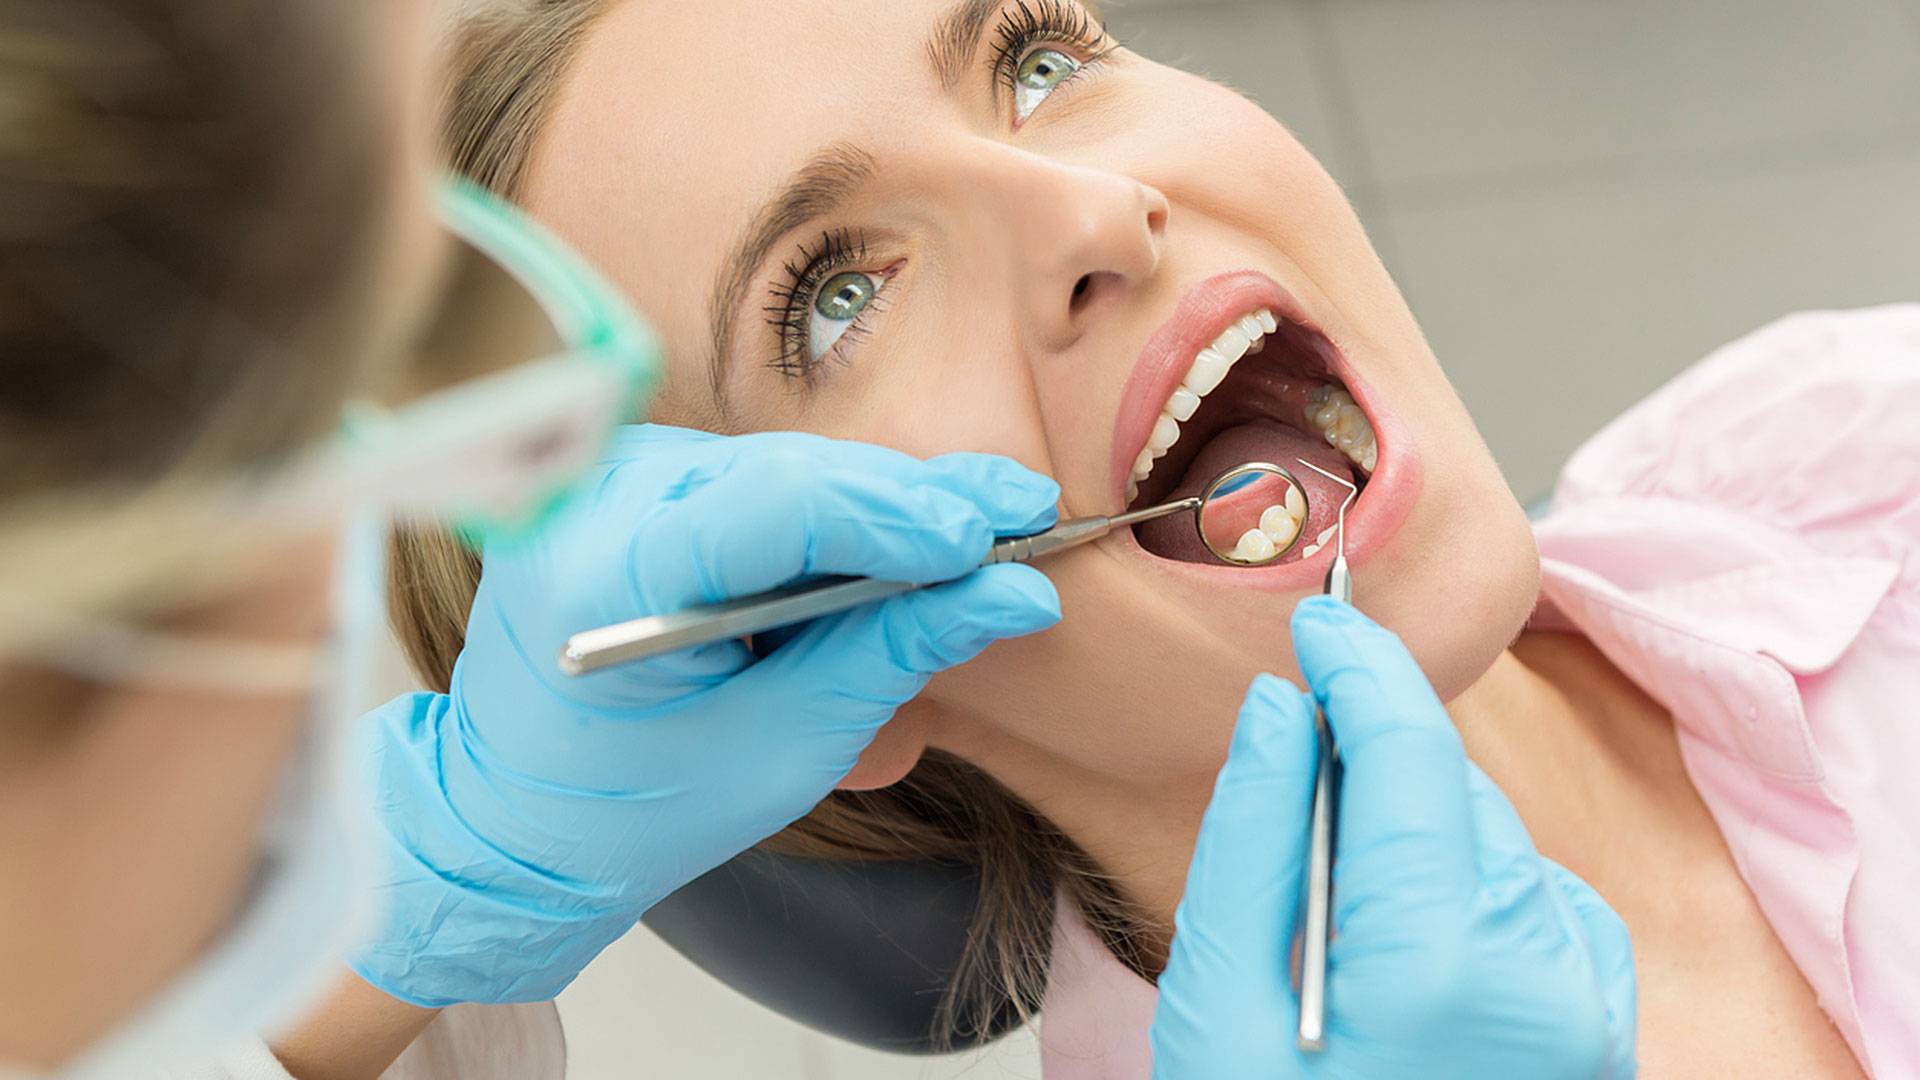 Dental And Denture Care Center, Spring Hill, Dental Crown Procedure